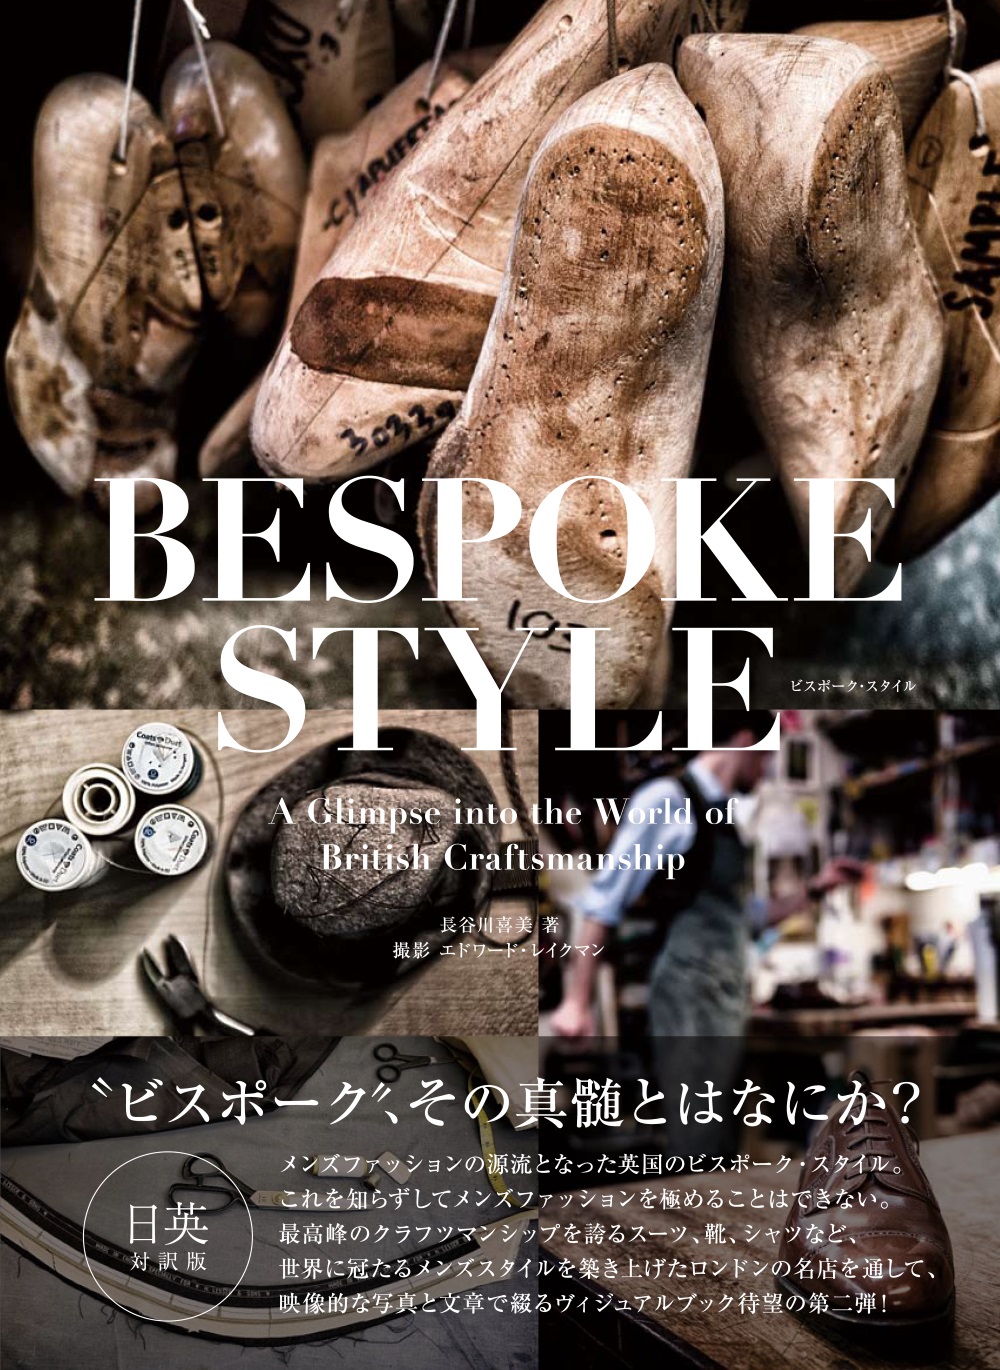 Bespoke Style（ビスポーク・スタイル）の商品画像